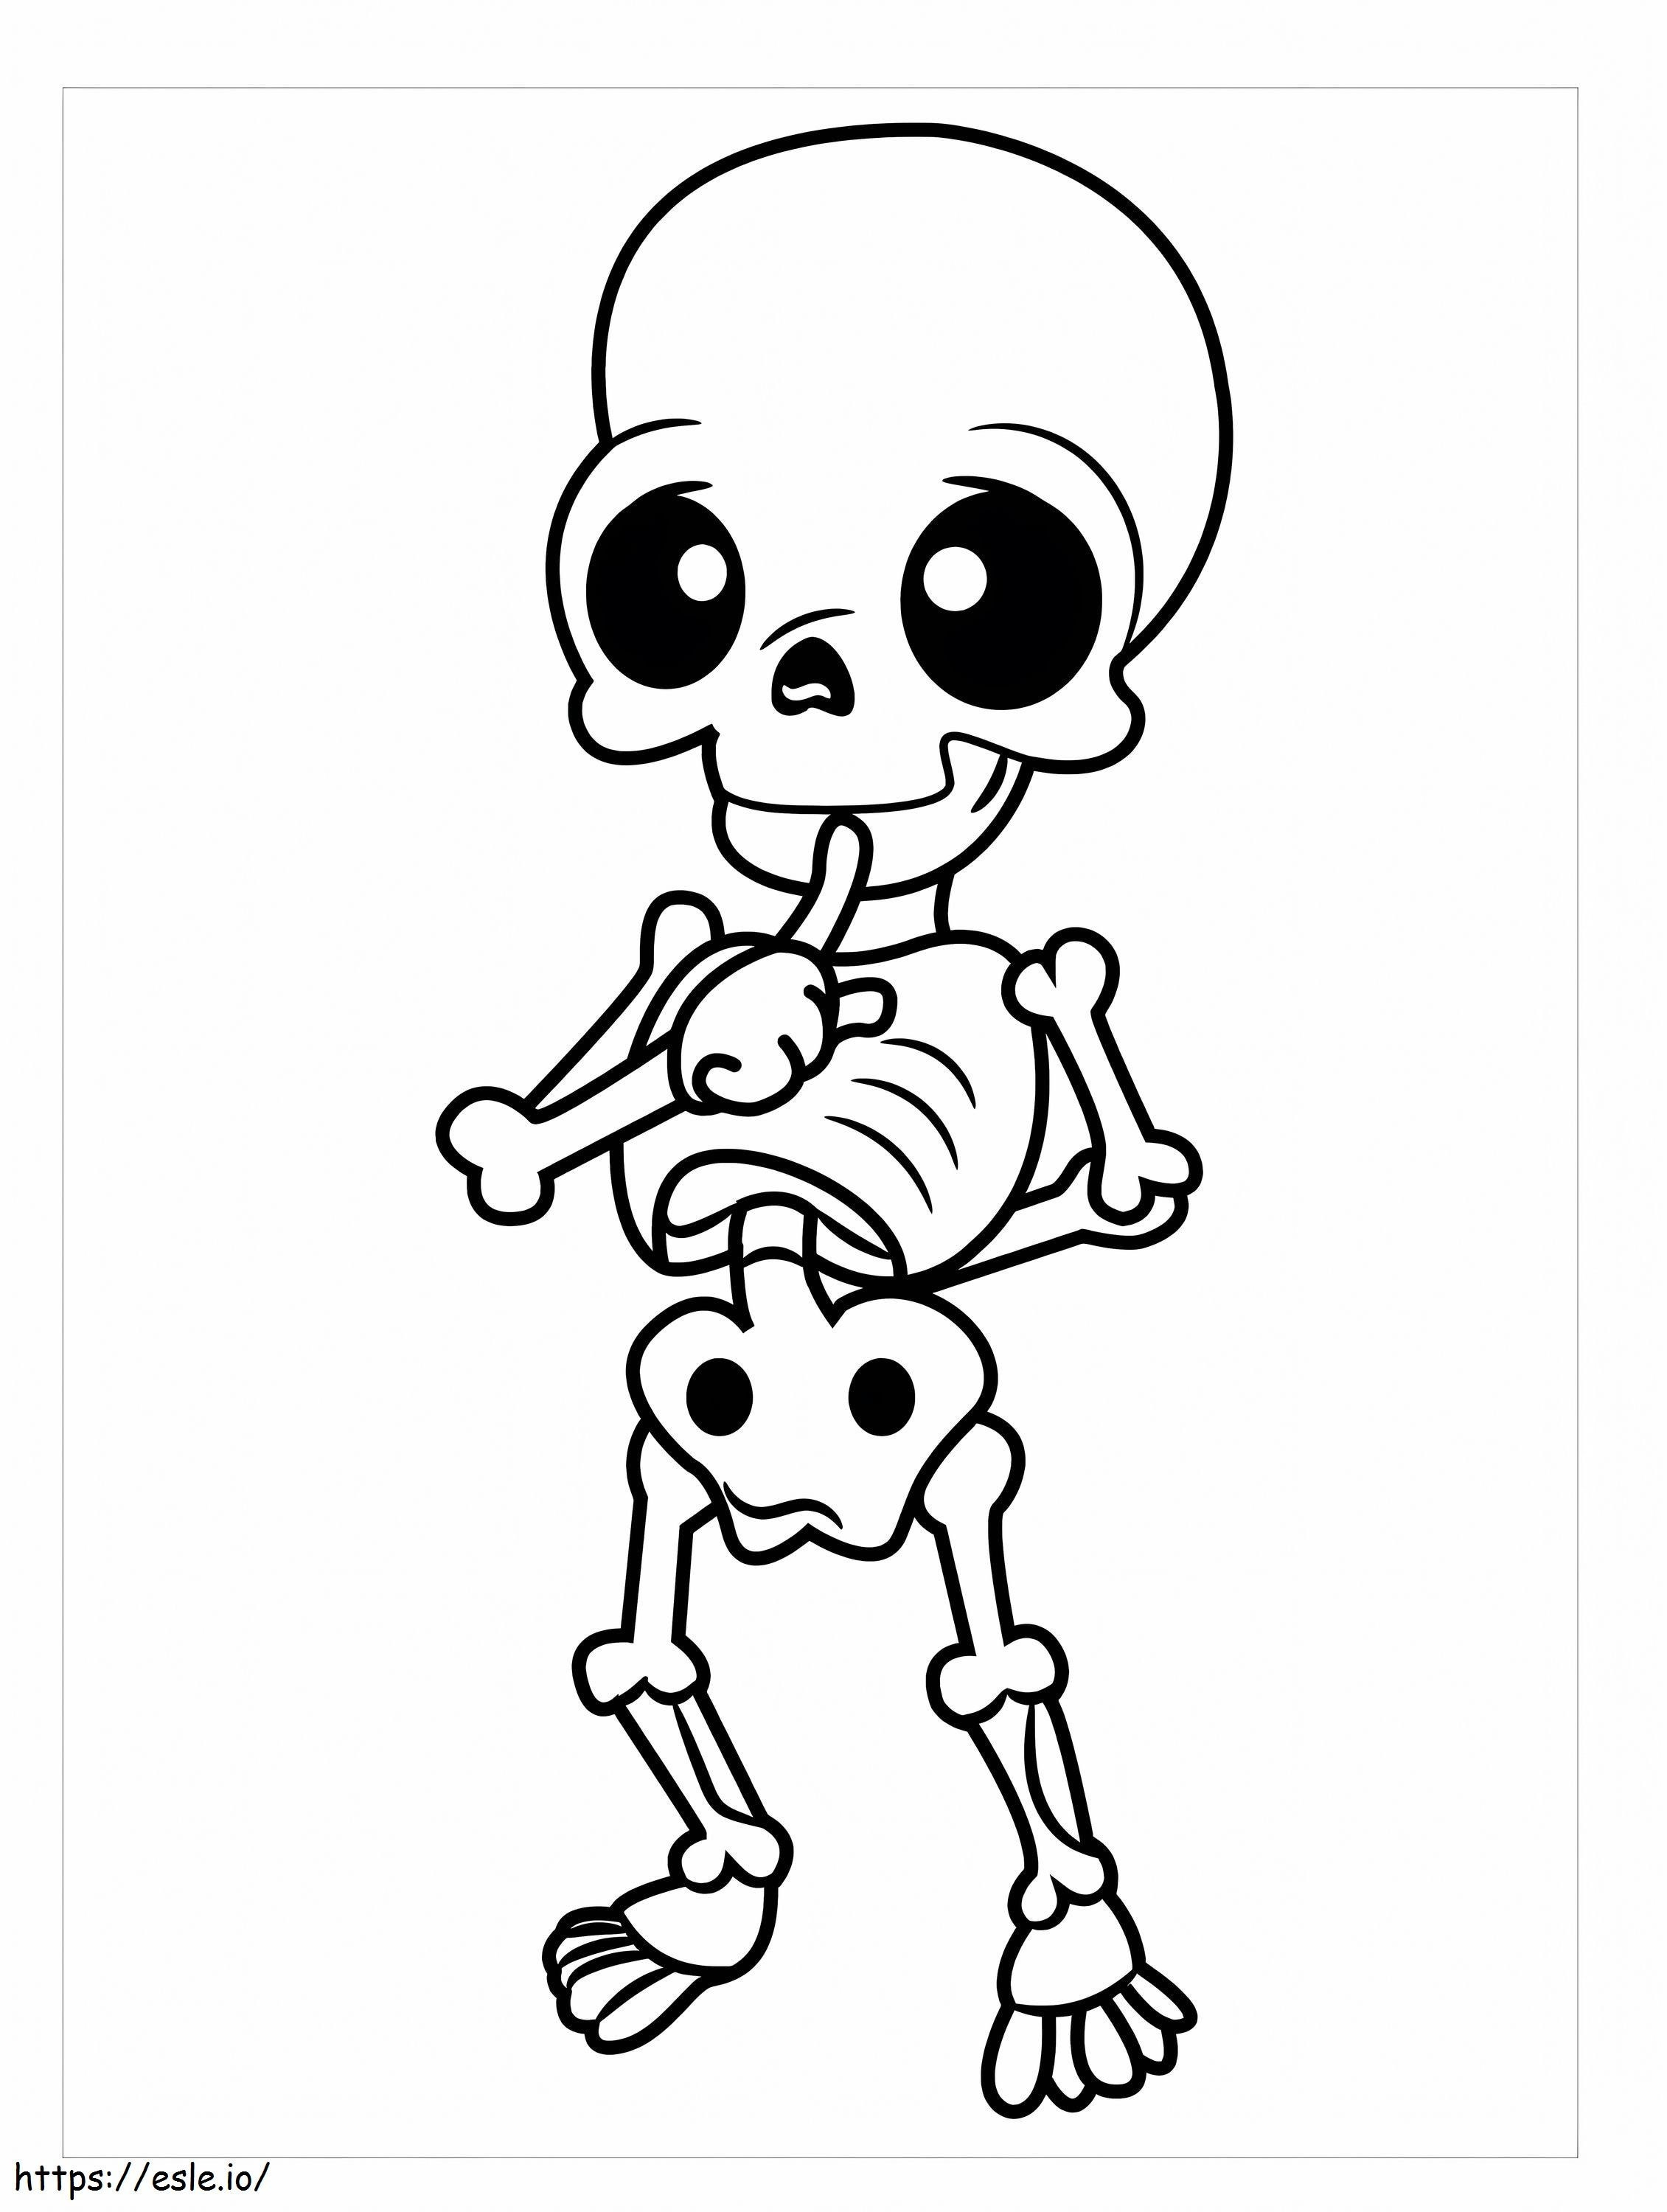 Chibi-Skelett ausmalbilder